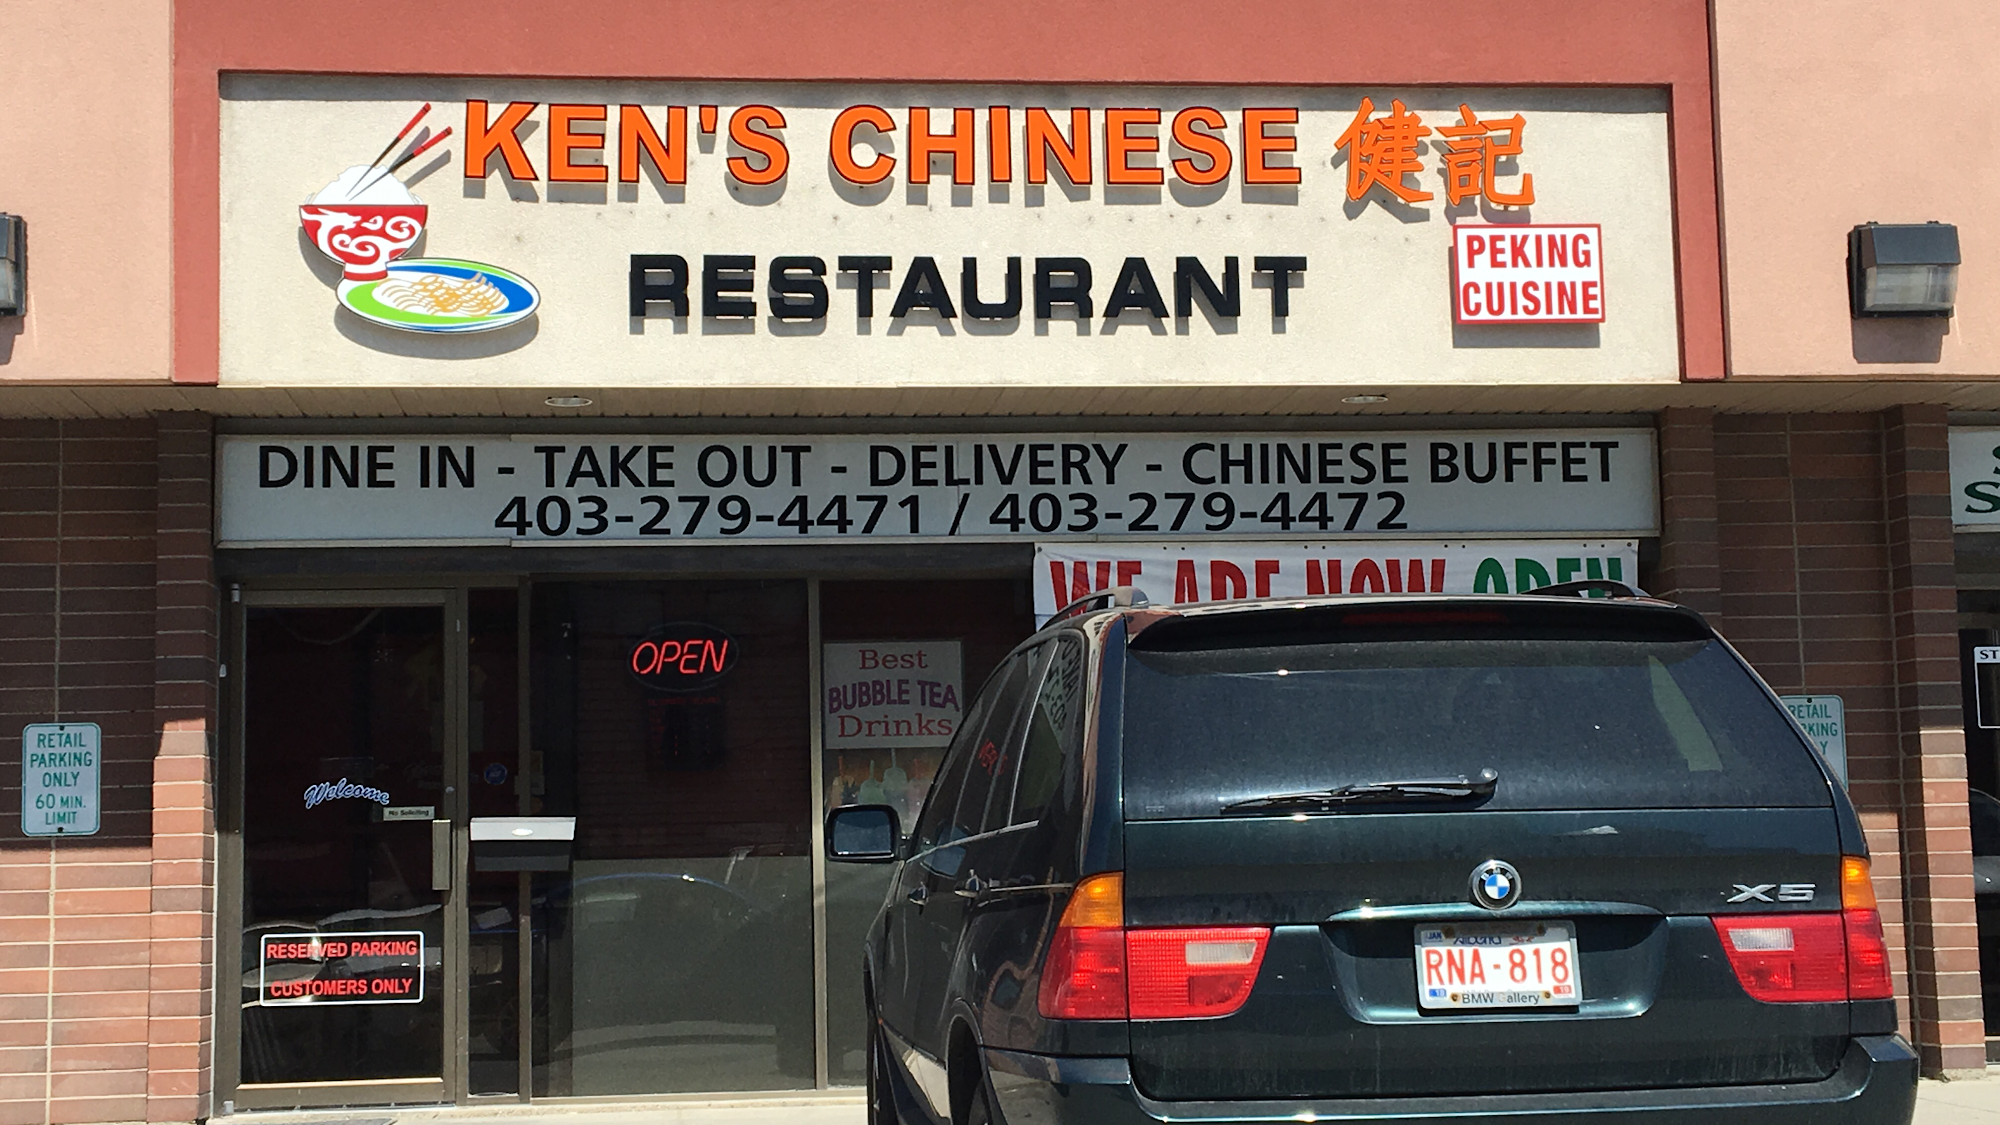 Ken's Chinese Restaurant